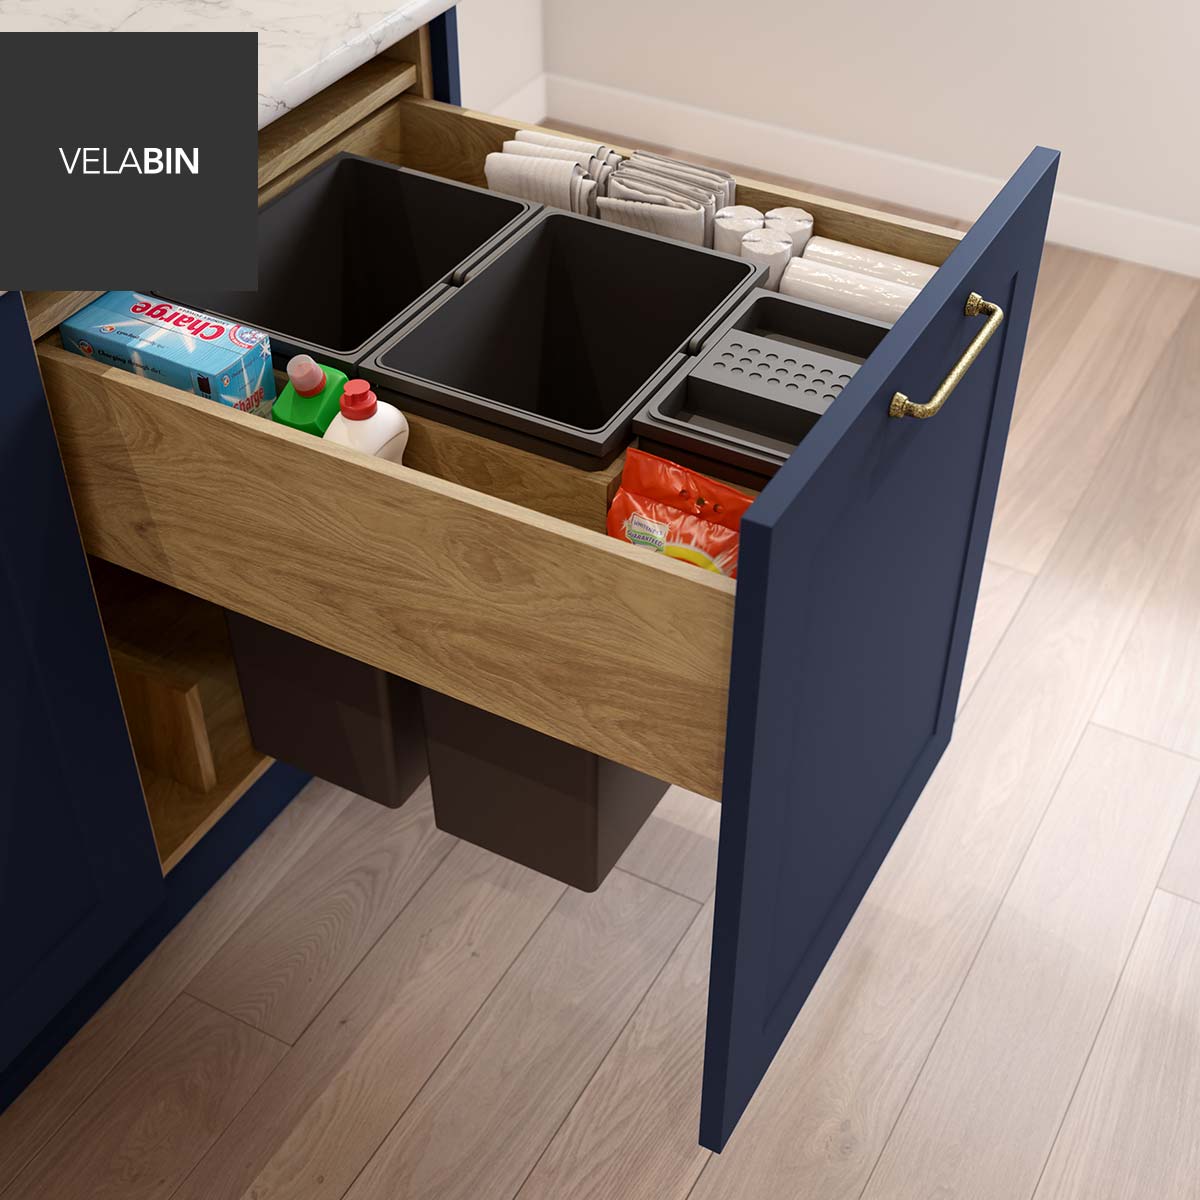 Velabin integrated kitchen bin in Portland Oak